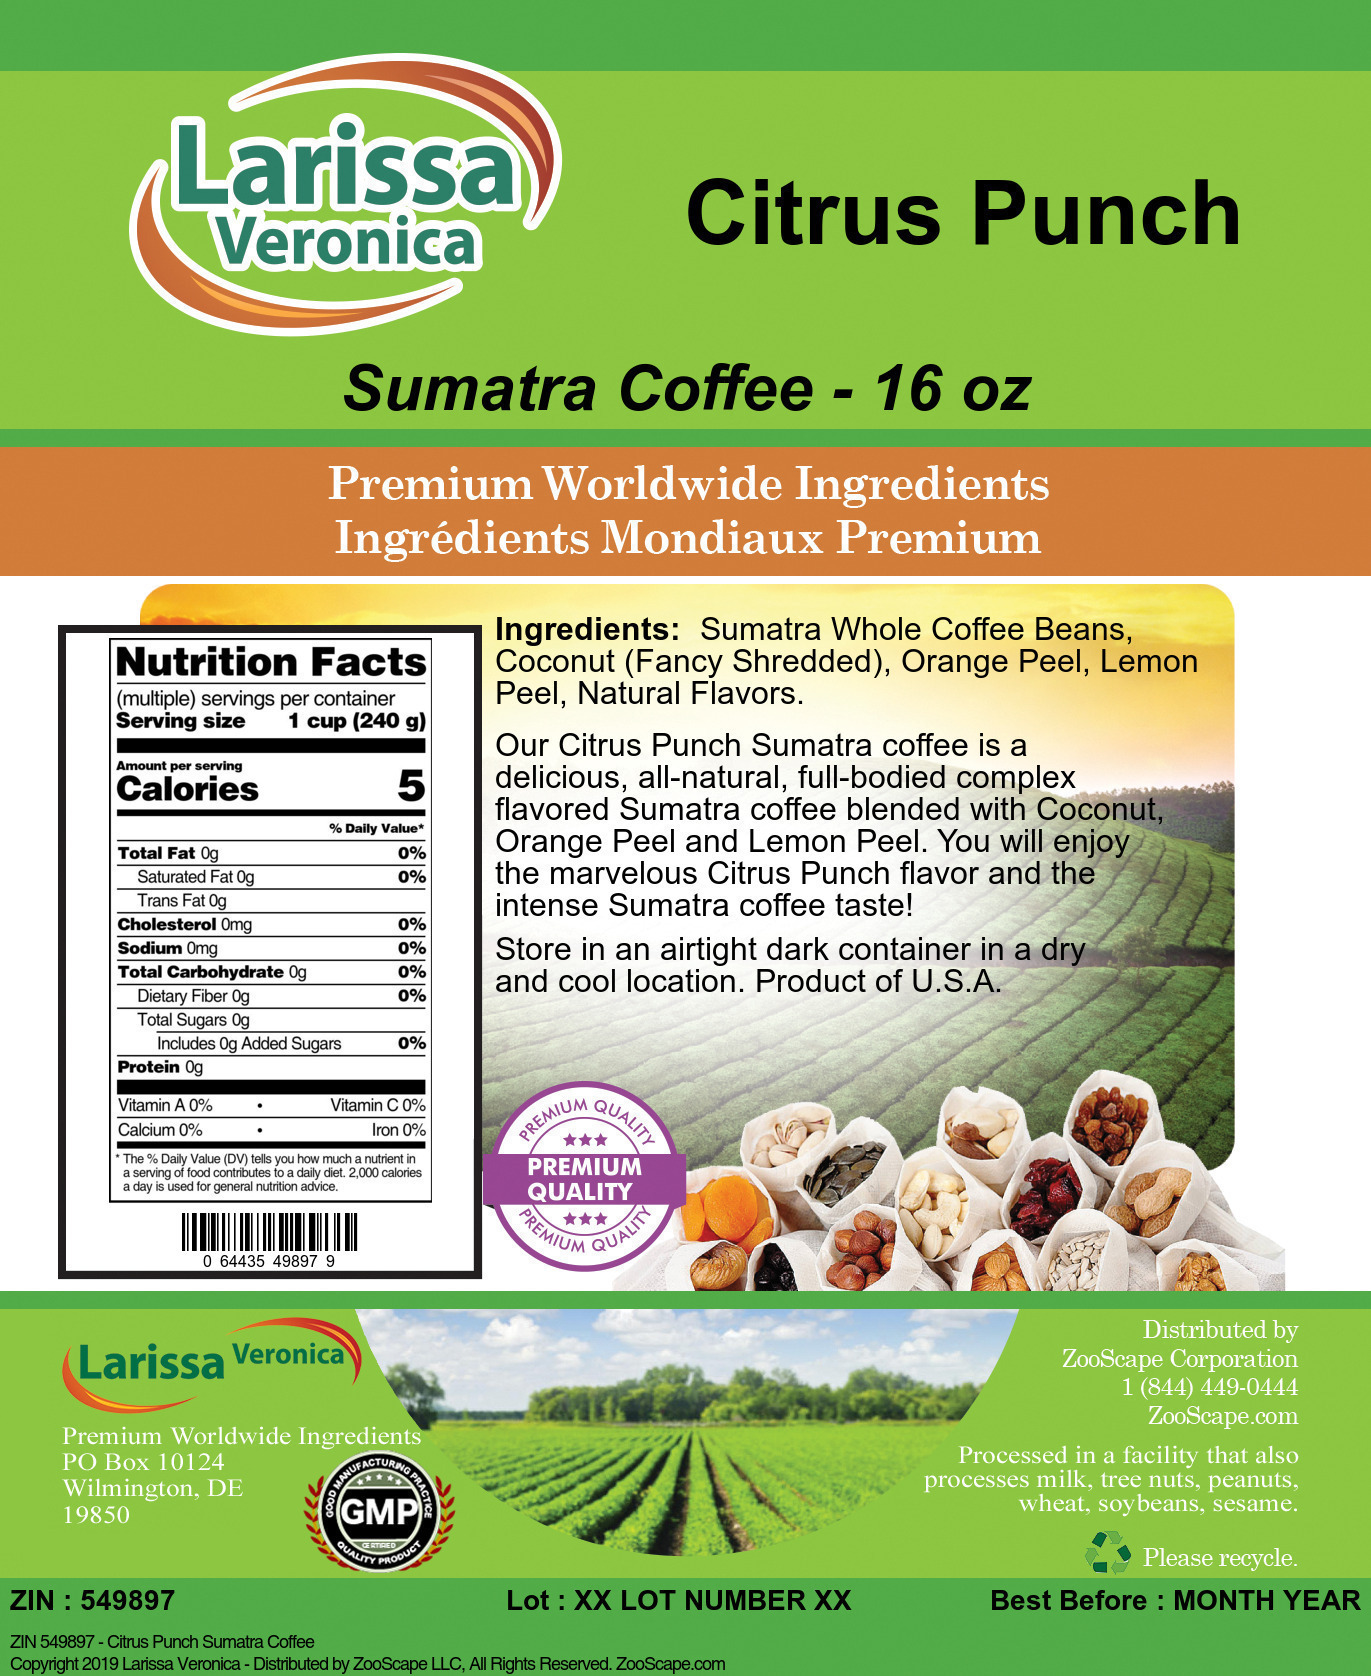 Citrus Punch Sumatra Coffee - Label